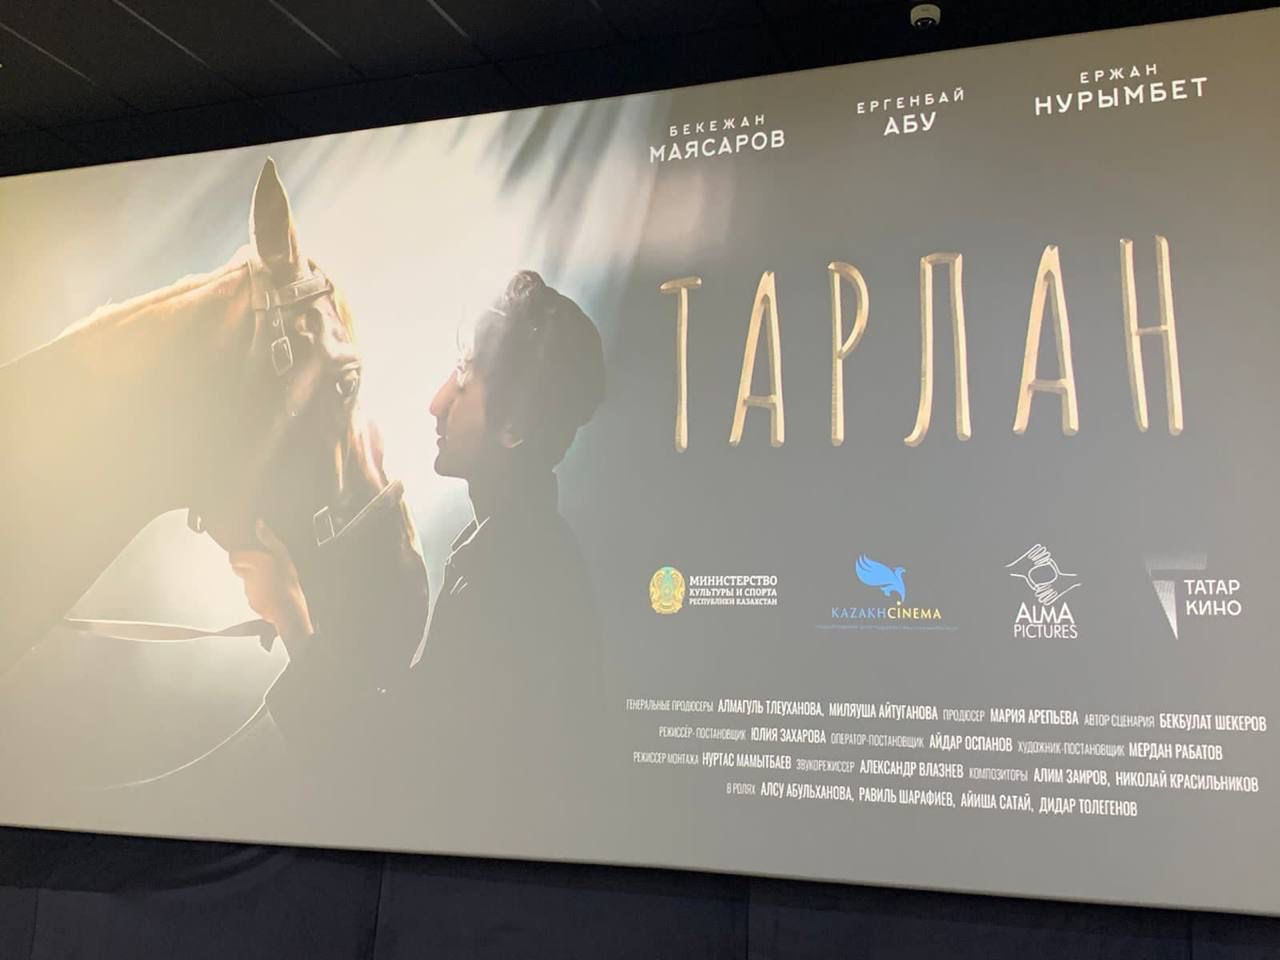 30 ноября 2022 года в г.Казань состоялся показ фильма «Тарлан», который выходит в российский прокат 1 декабря 2022